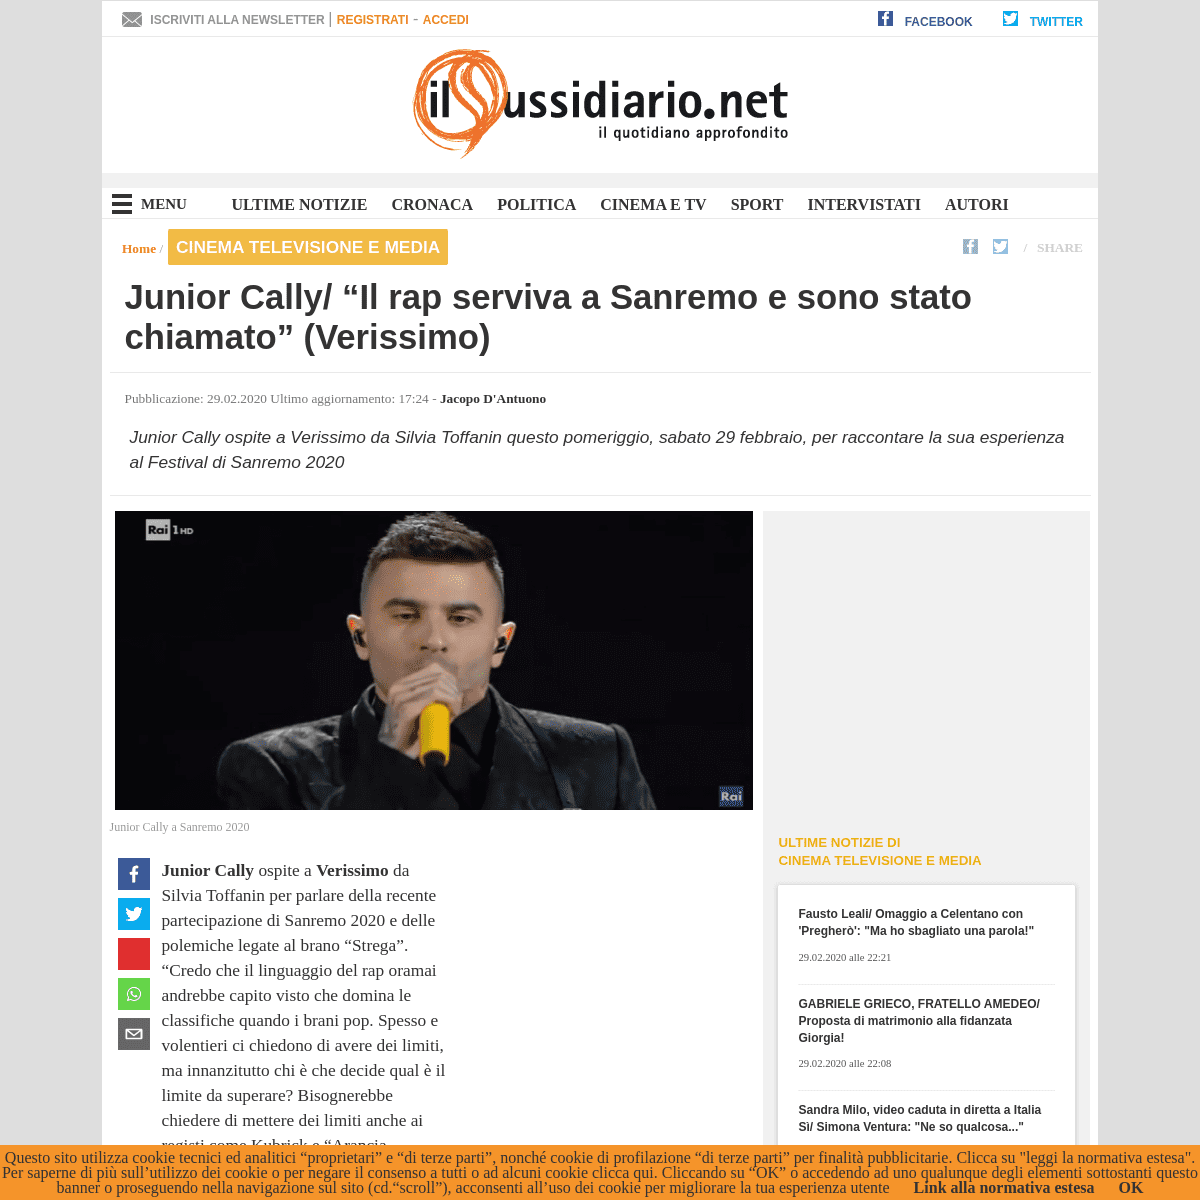 A complete backup of www.ilsussidiario.net/news/junior-cally-racconta-il-suo-sanremo-dopo-le-infinite-polemiche-verissimo/199139